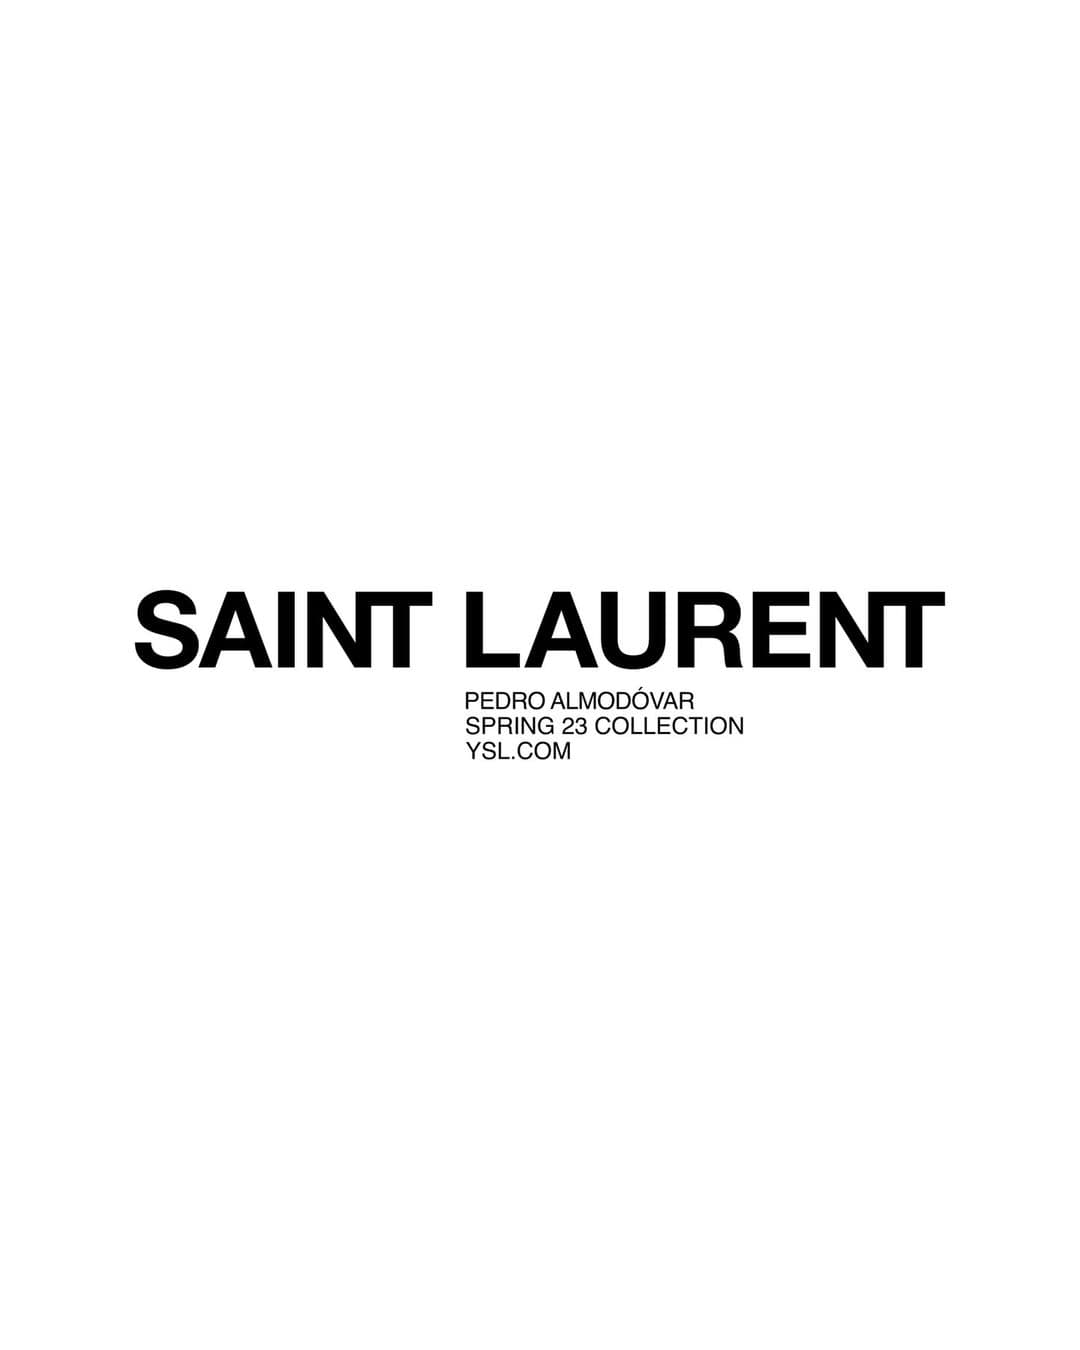 Saint Laurent Winter 2023 Directors Cut